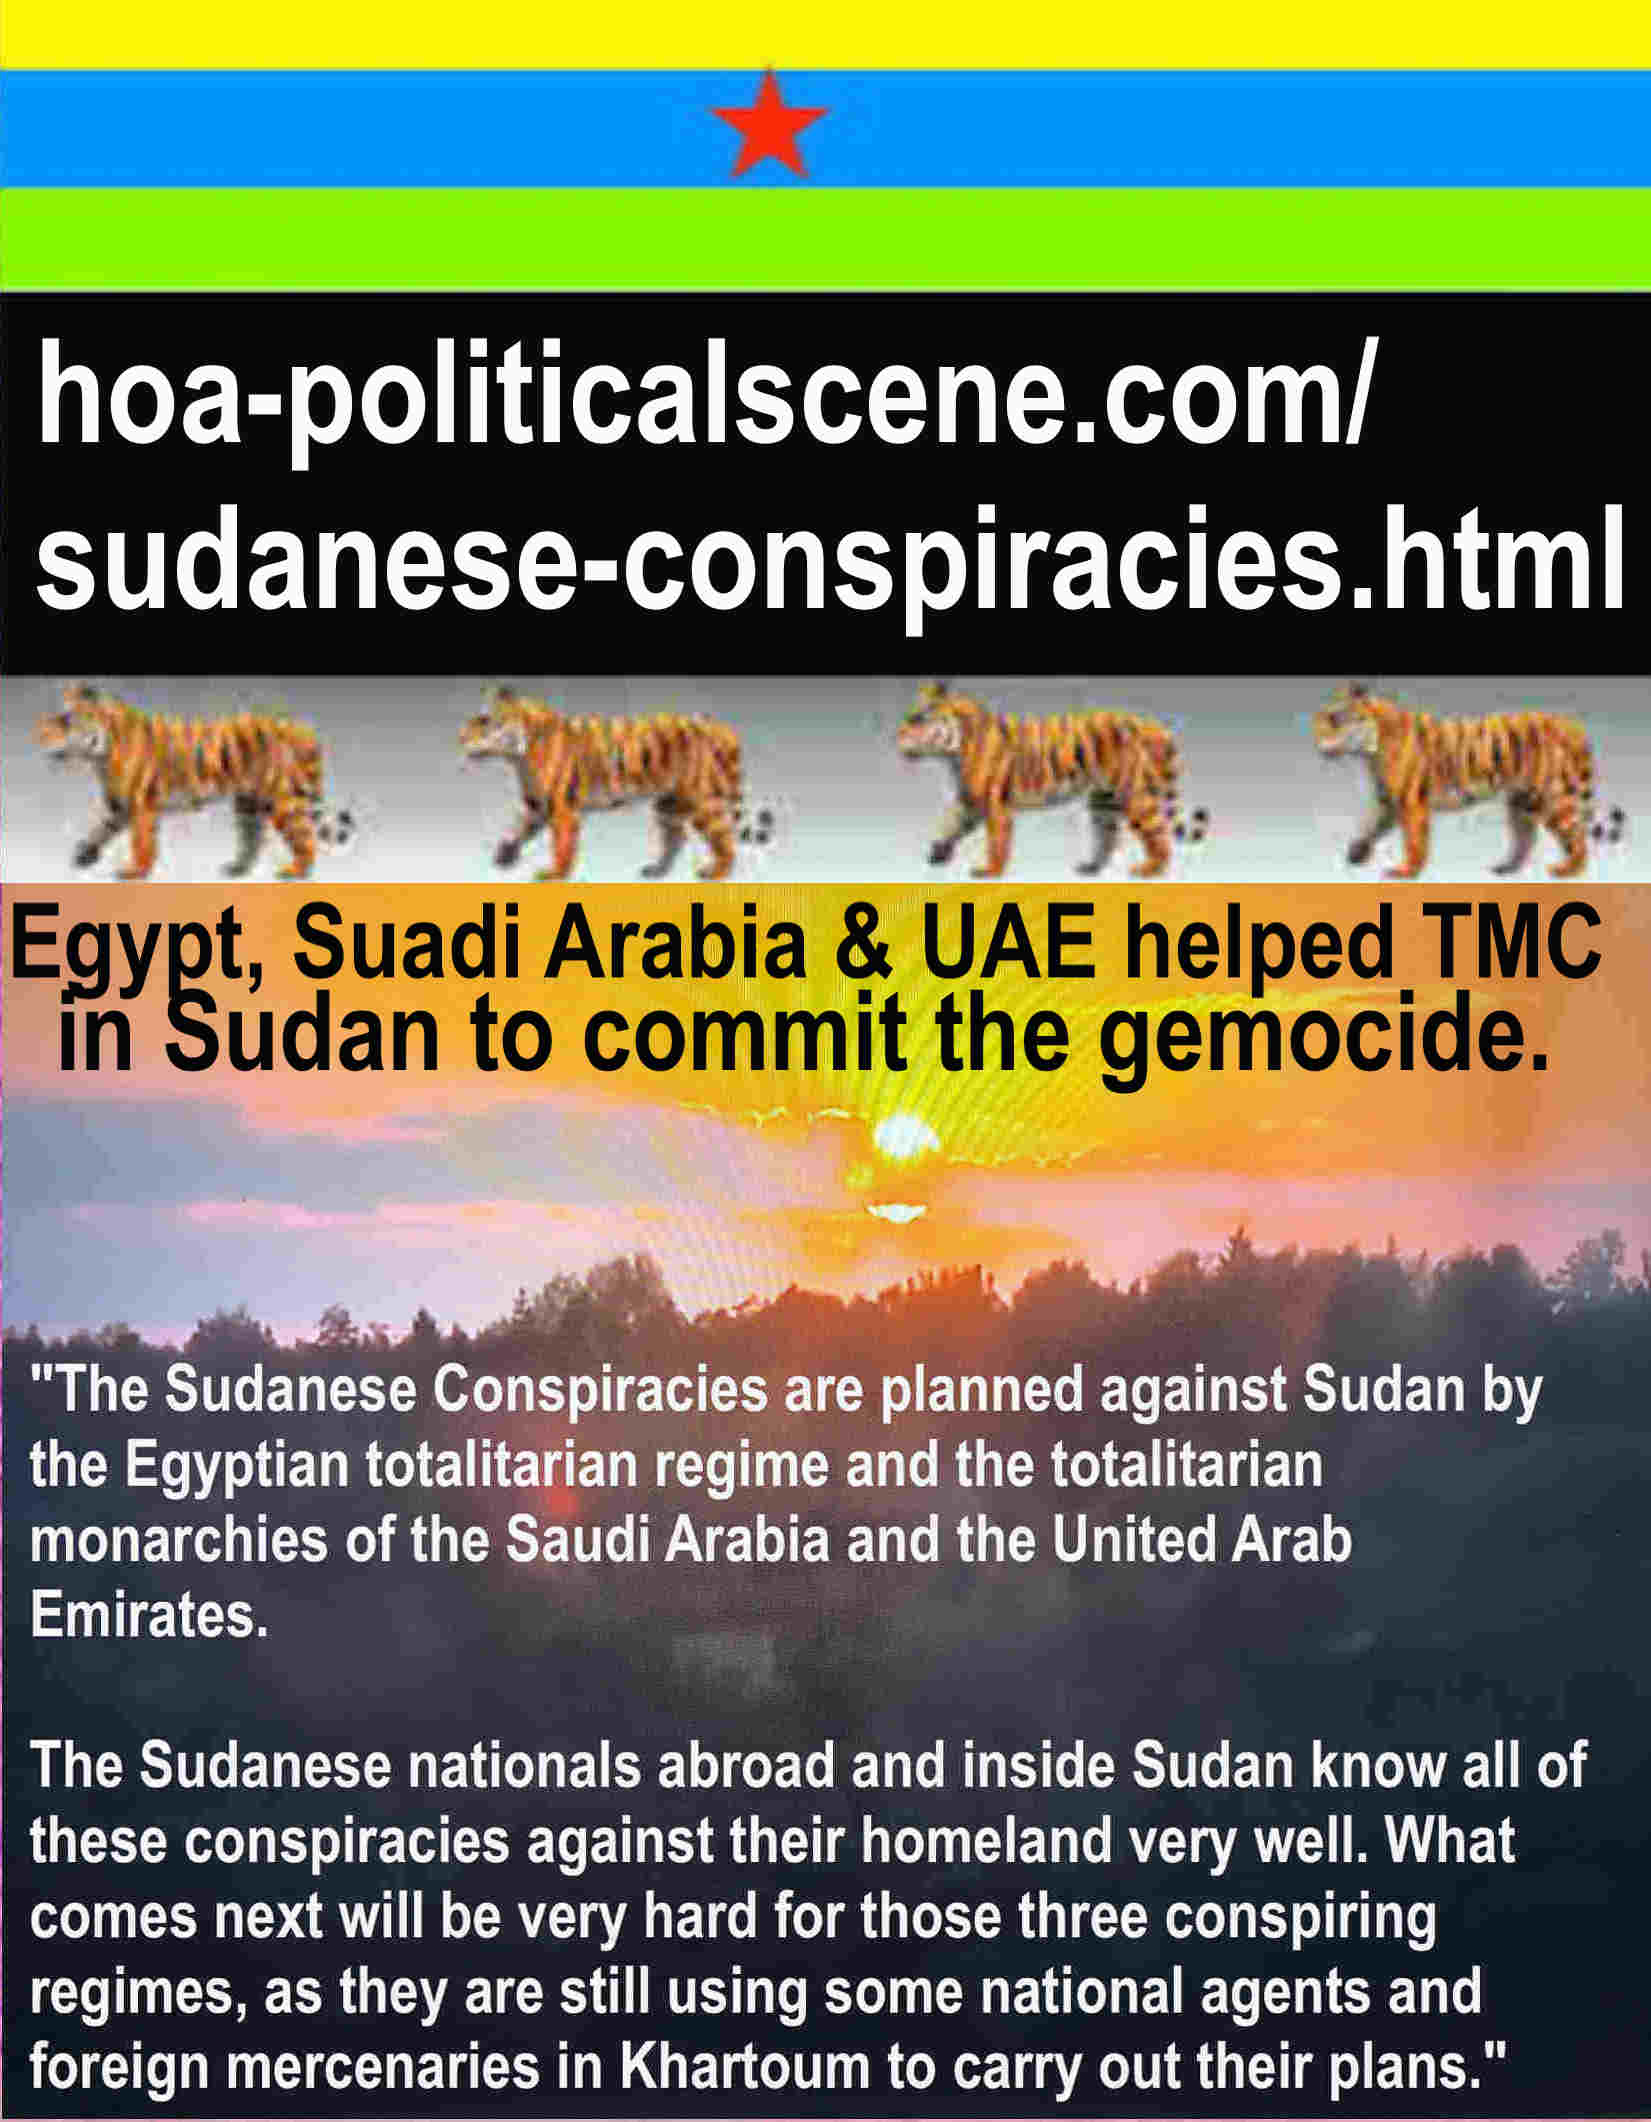 Los líderes árabes en Egipto, Arabia Saudita, Qatar y los Emiratos Árabes Unidos siempre conspiran en Sudden y provocan el atraso de los sudaneses. Activista secular Khalid Mohammed Osman.